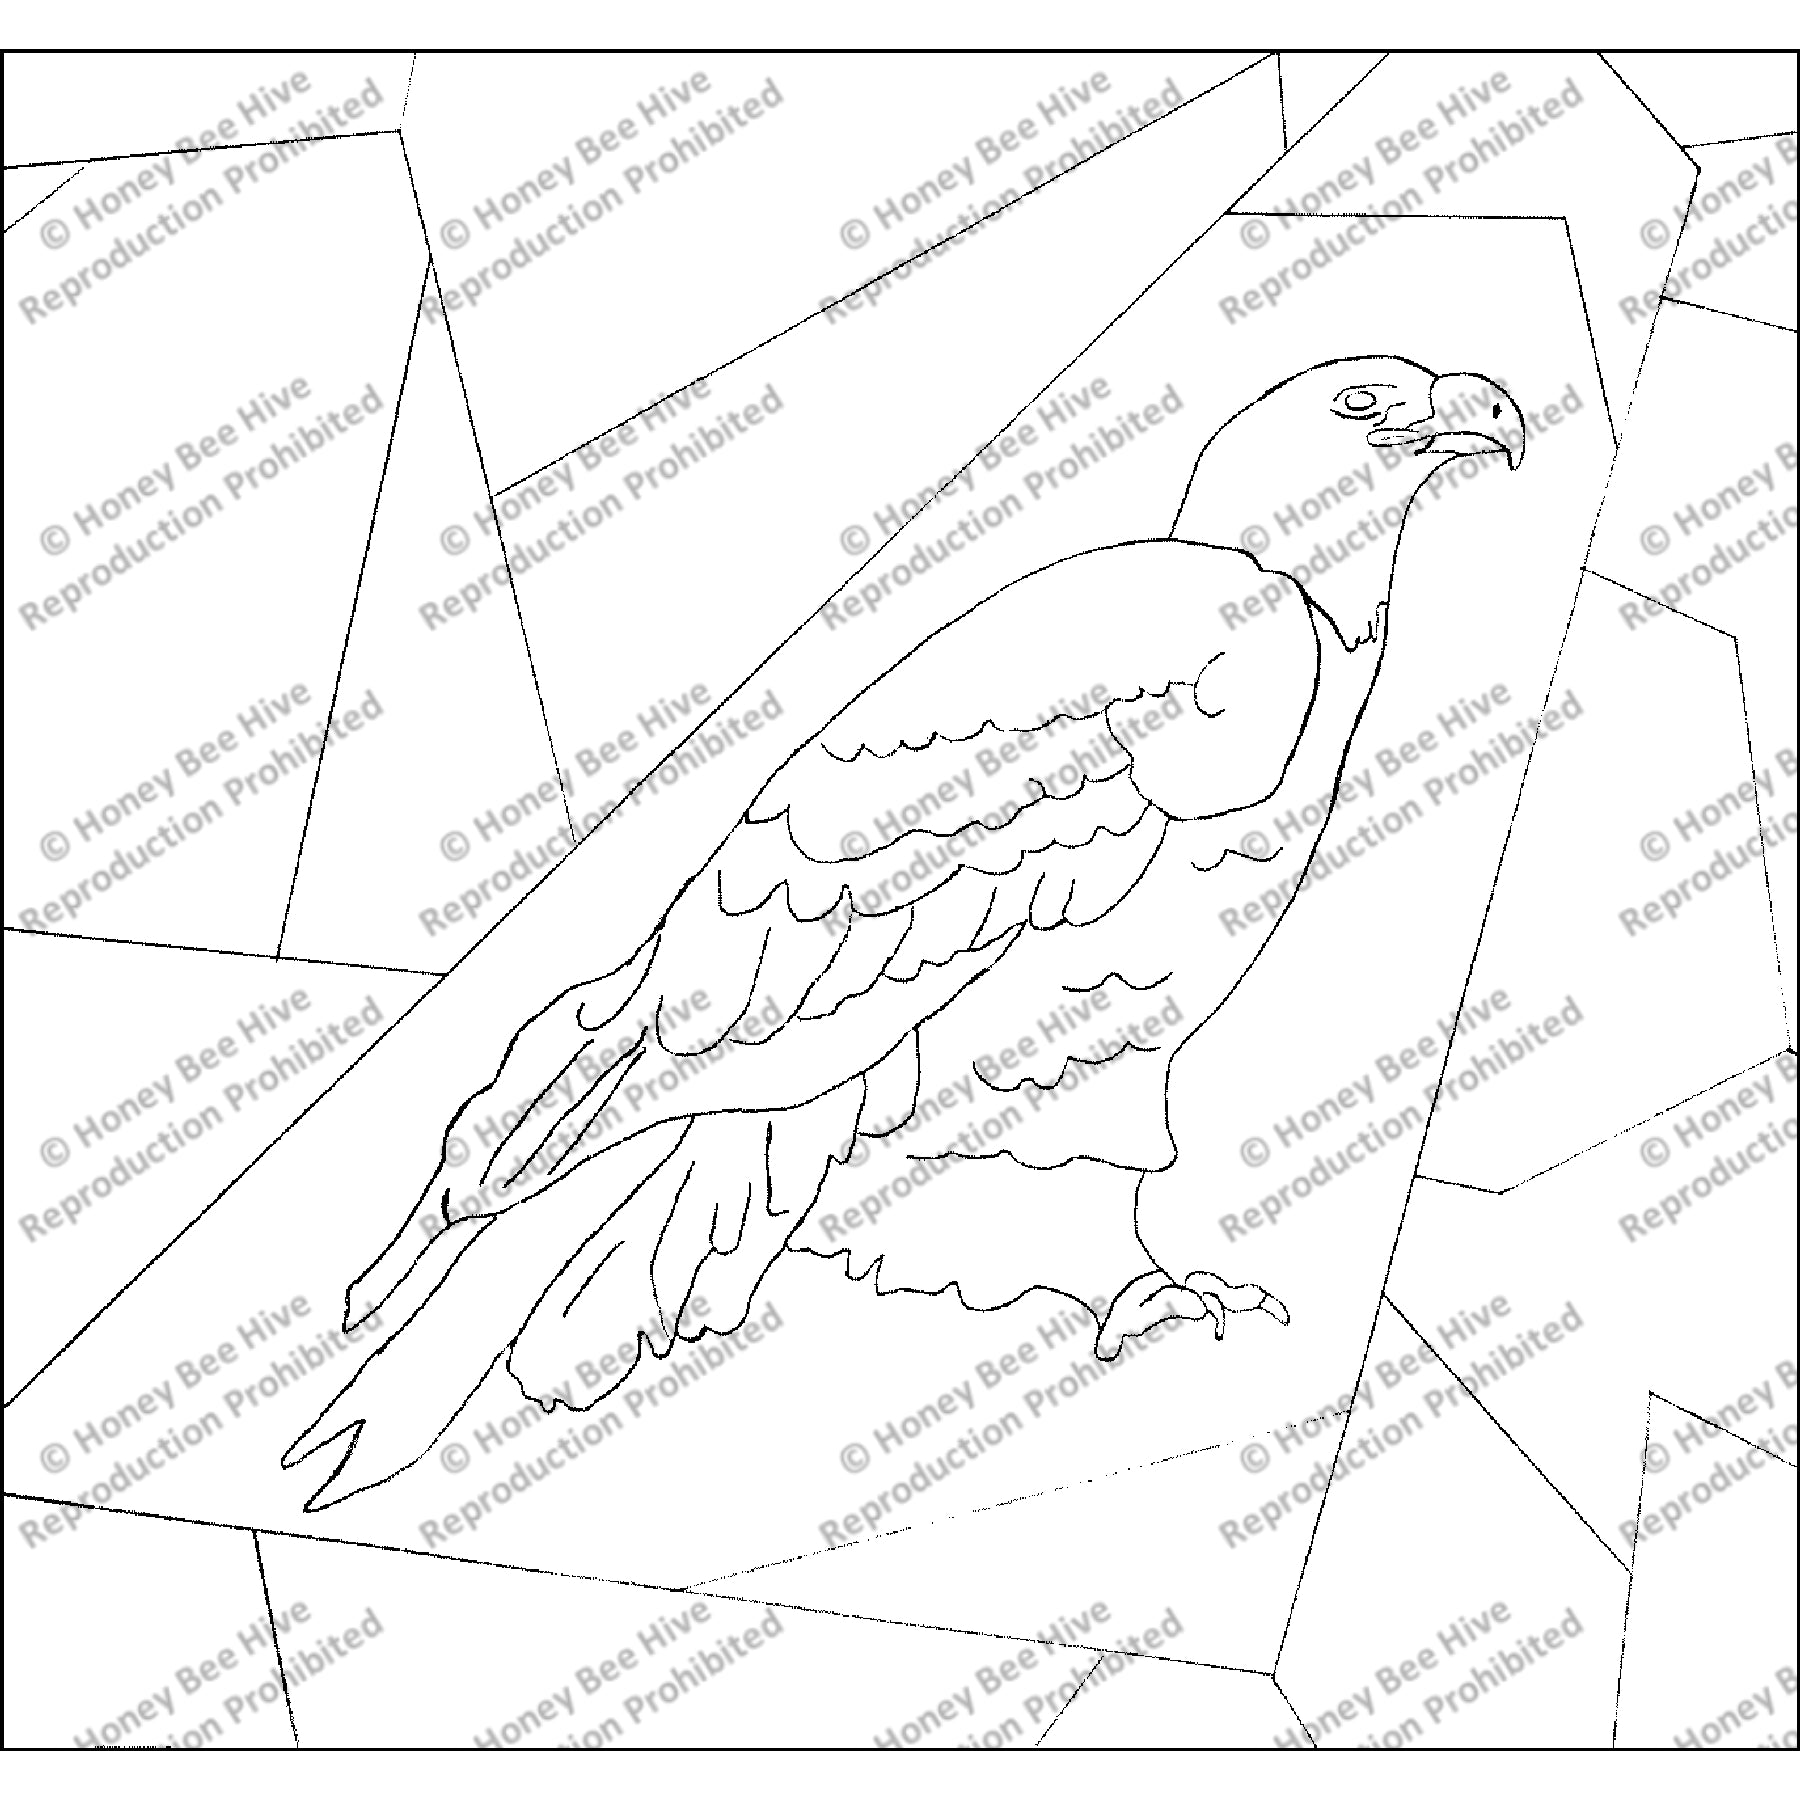 Crazy Quilt - Bald Eagle, rug hooking pattern